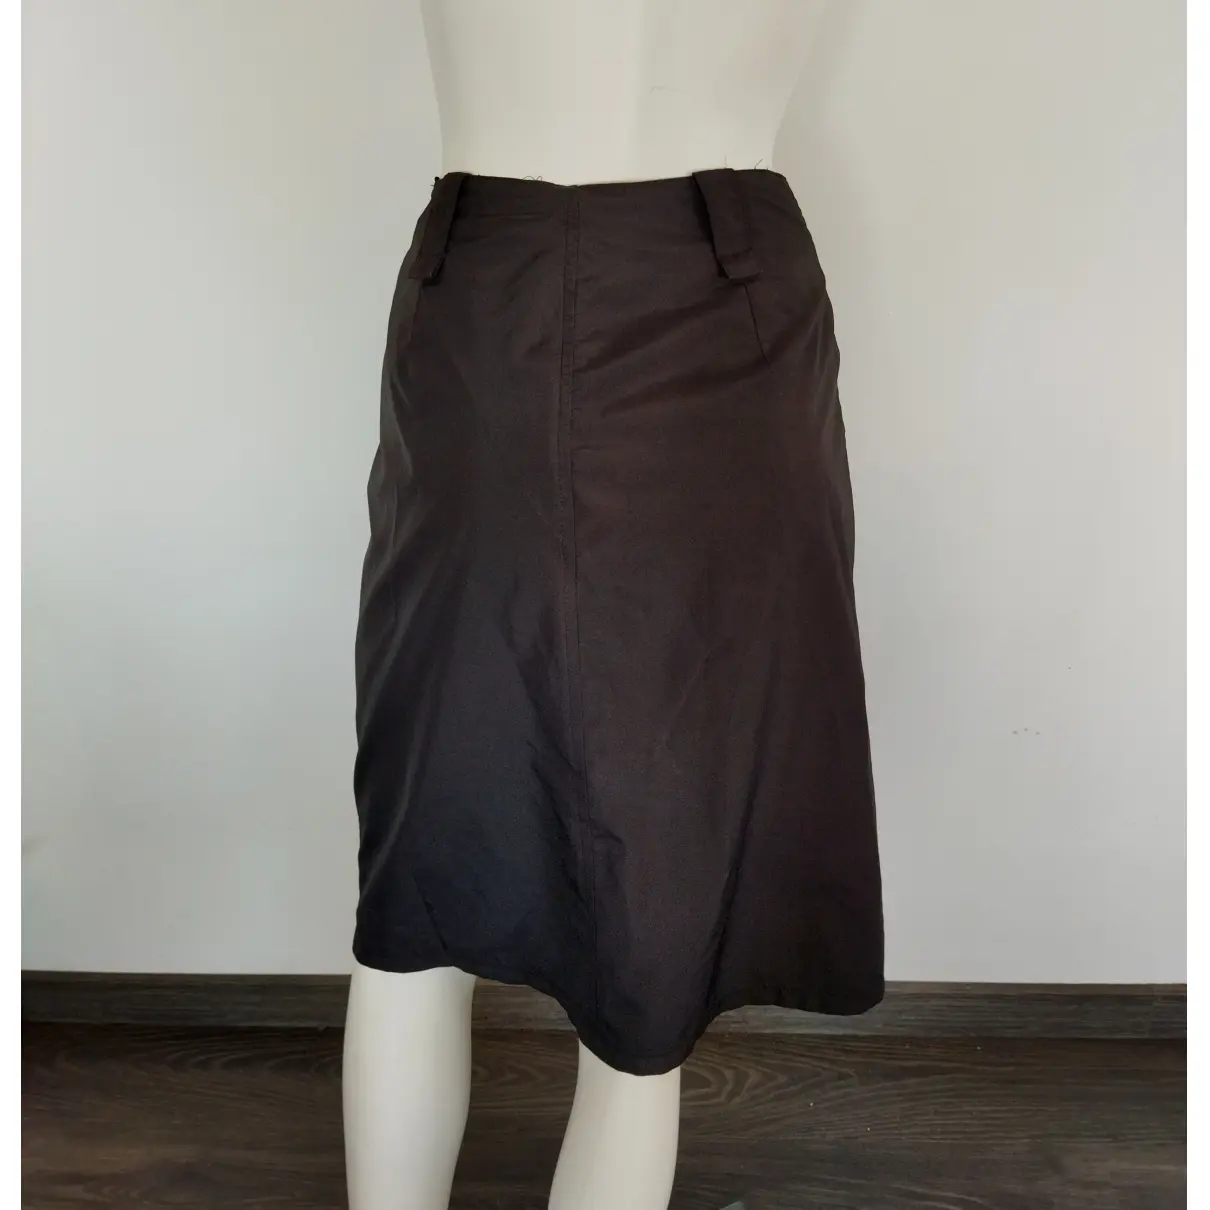 Buy Marella Skirt online